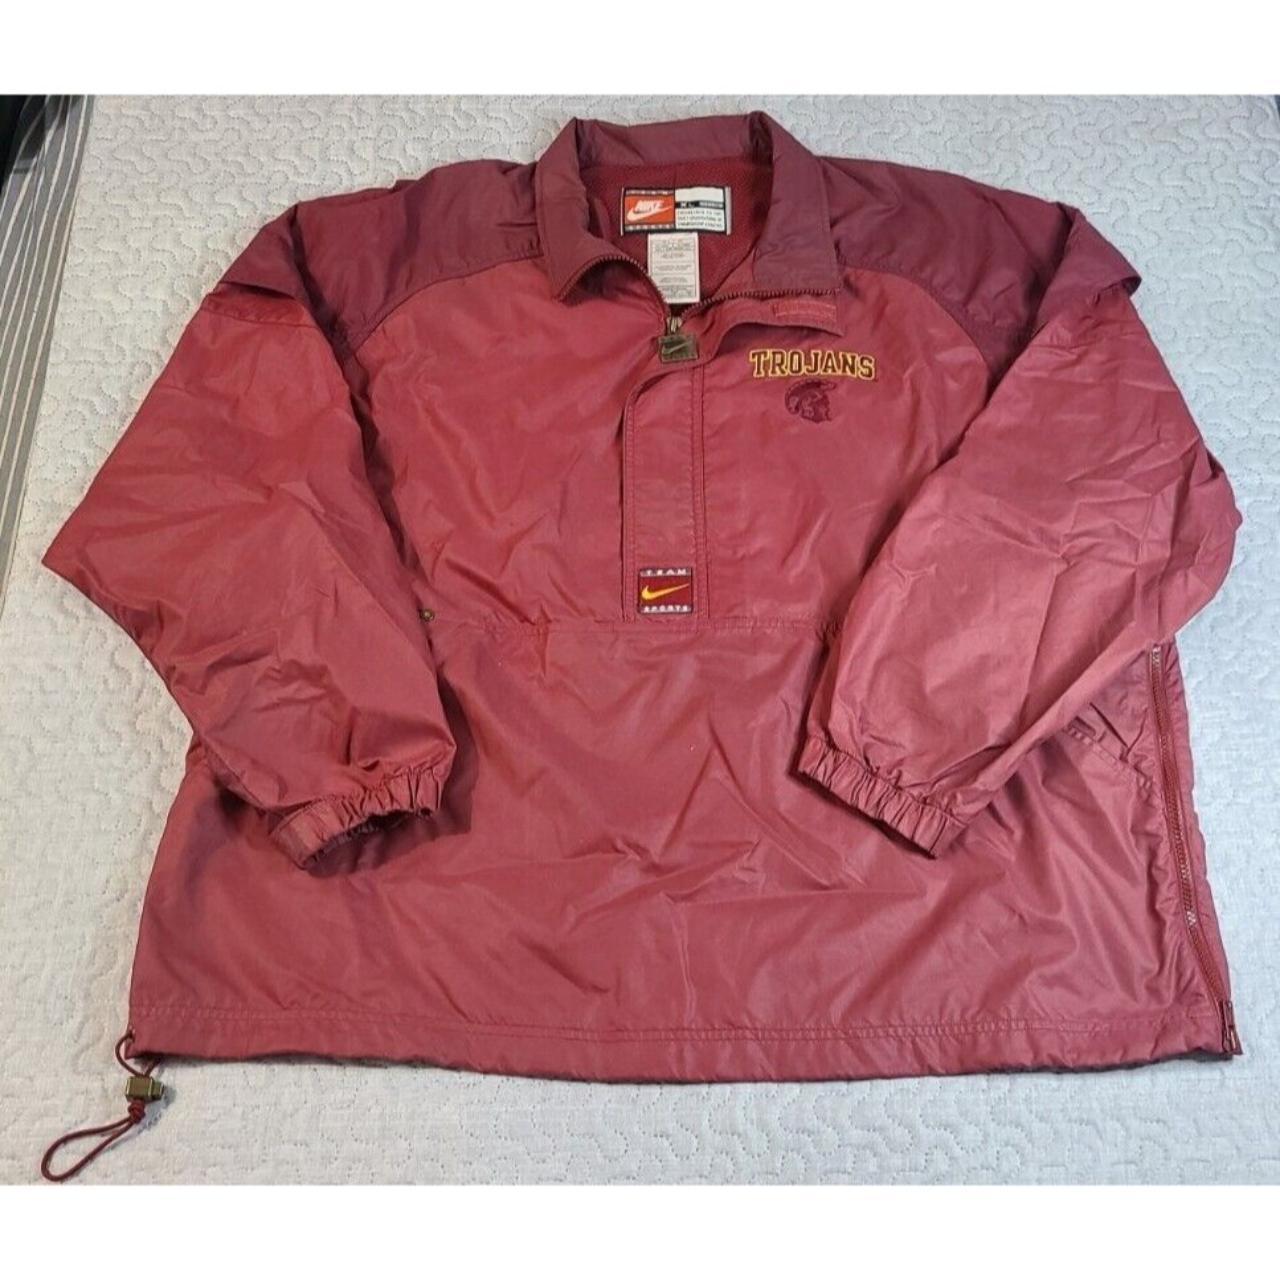 RARE Nike USC Trojans Vintage Pullover Jacket 1/4... - Depop